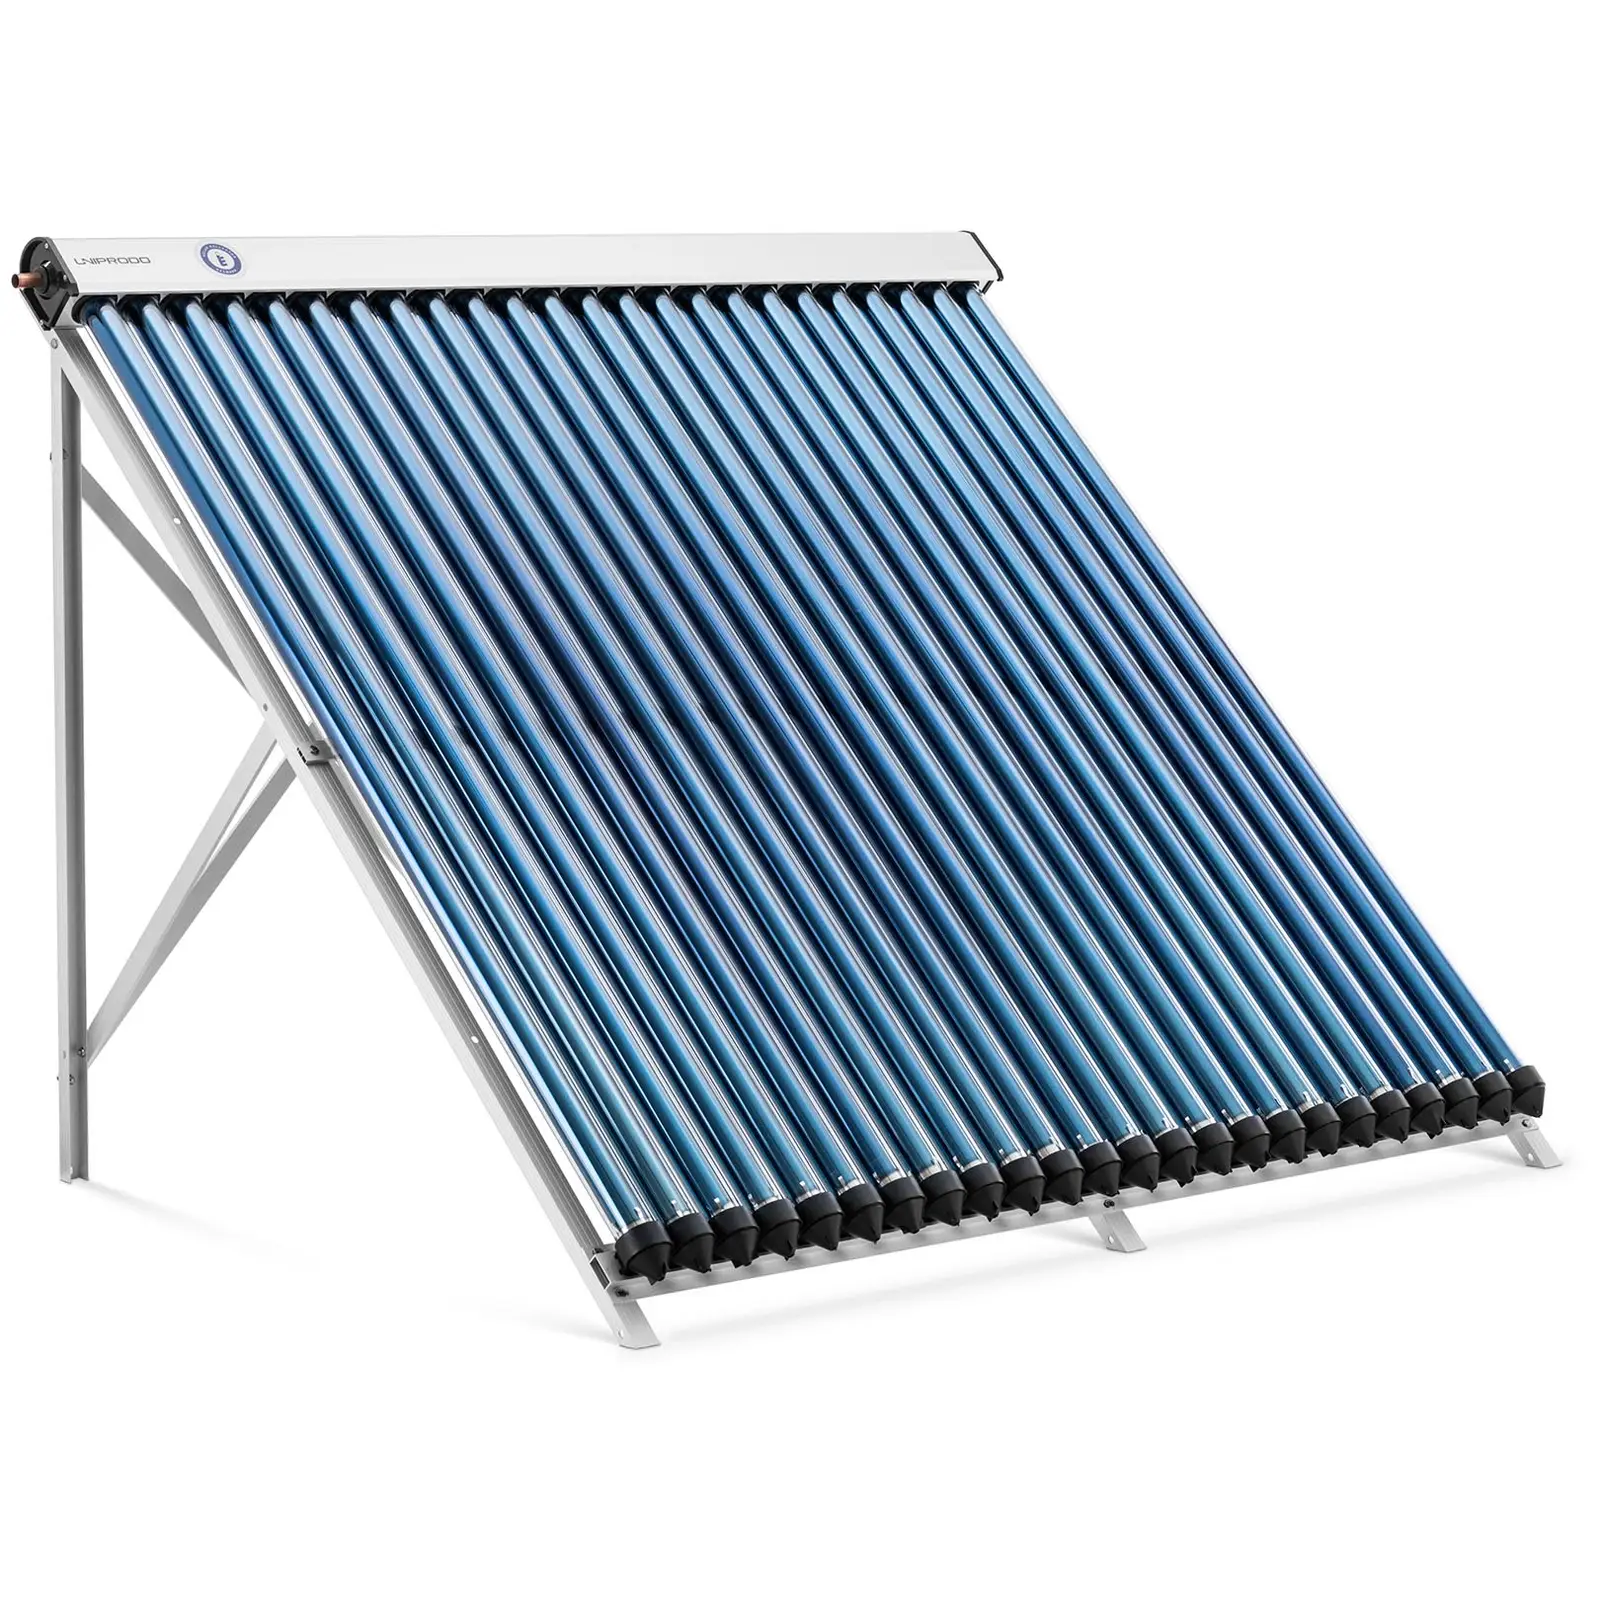 Pannello solare termico - {{number_of_tube_attachments}} tubi - 200 - 240 L - 1.92 m² - -45 - 90 °C